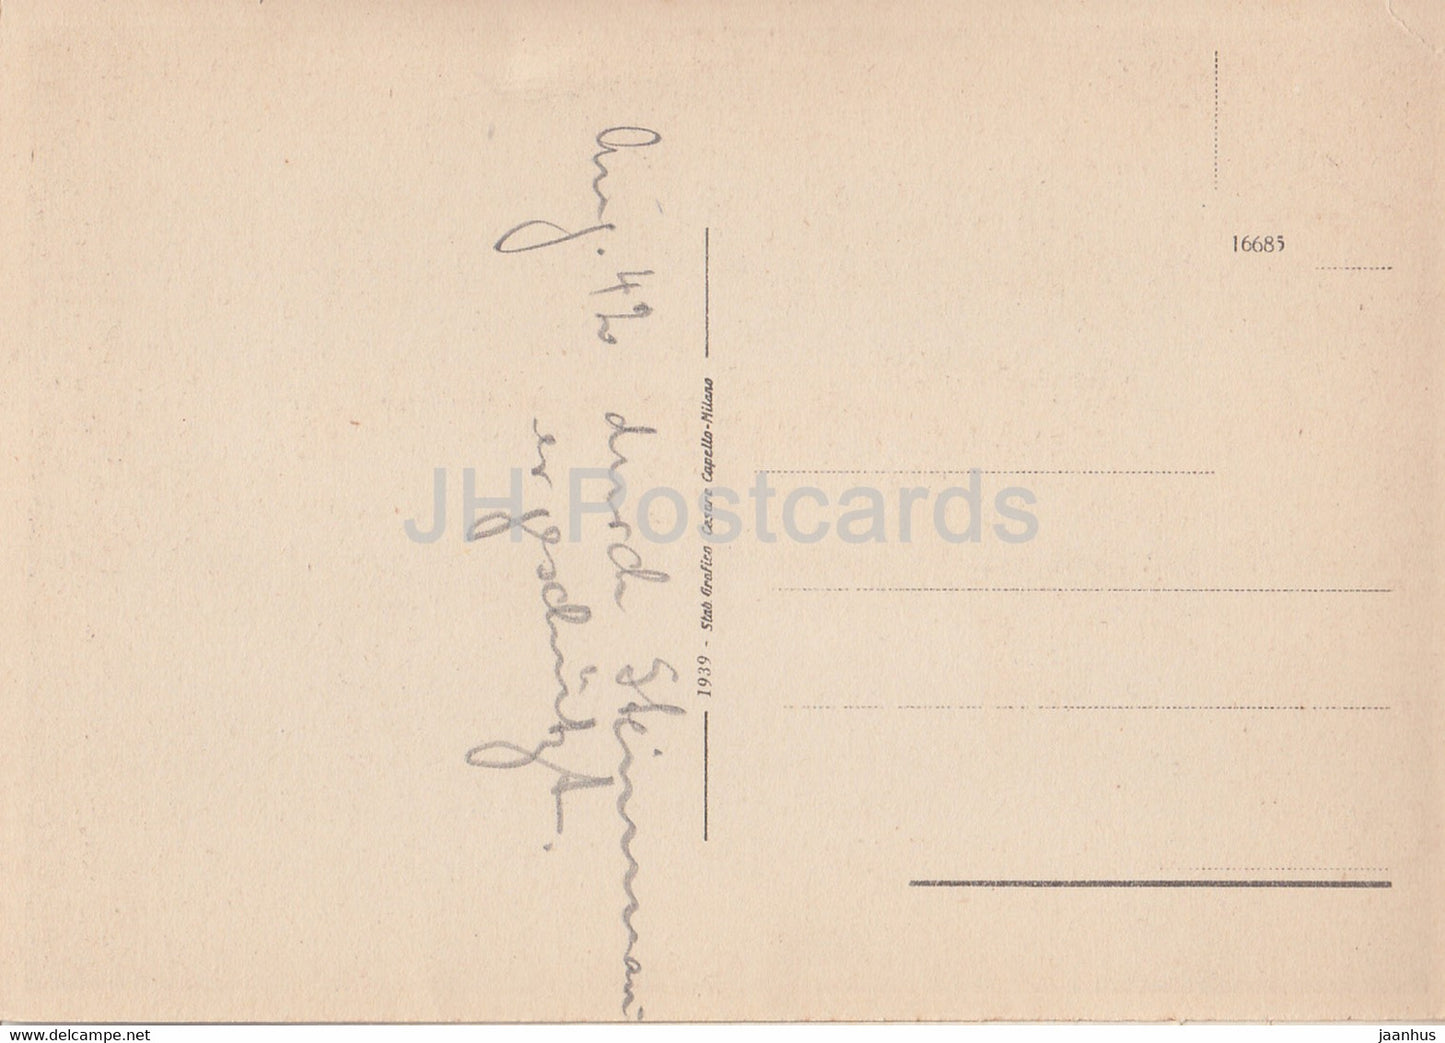 Lecce - Portale SS Nicolo e Cataldo - carte postale ancienne - 1939 - Italie - Italia - inutilisé